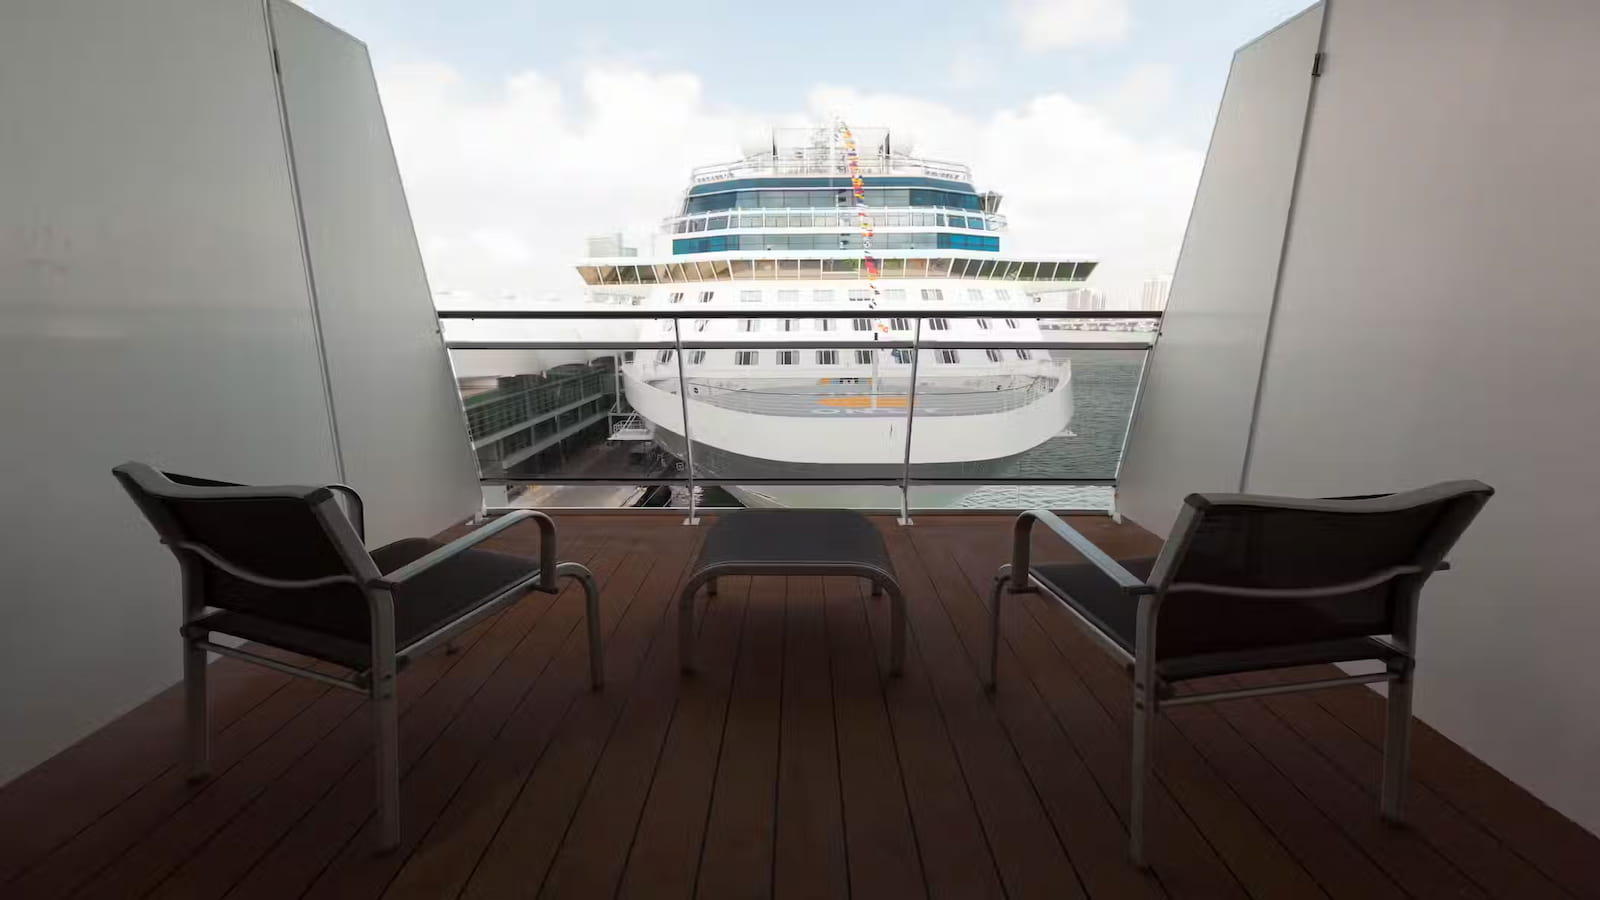 Veranda on a Cruise Ship